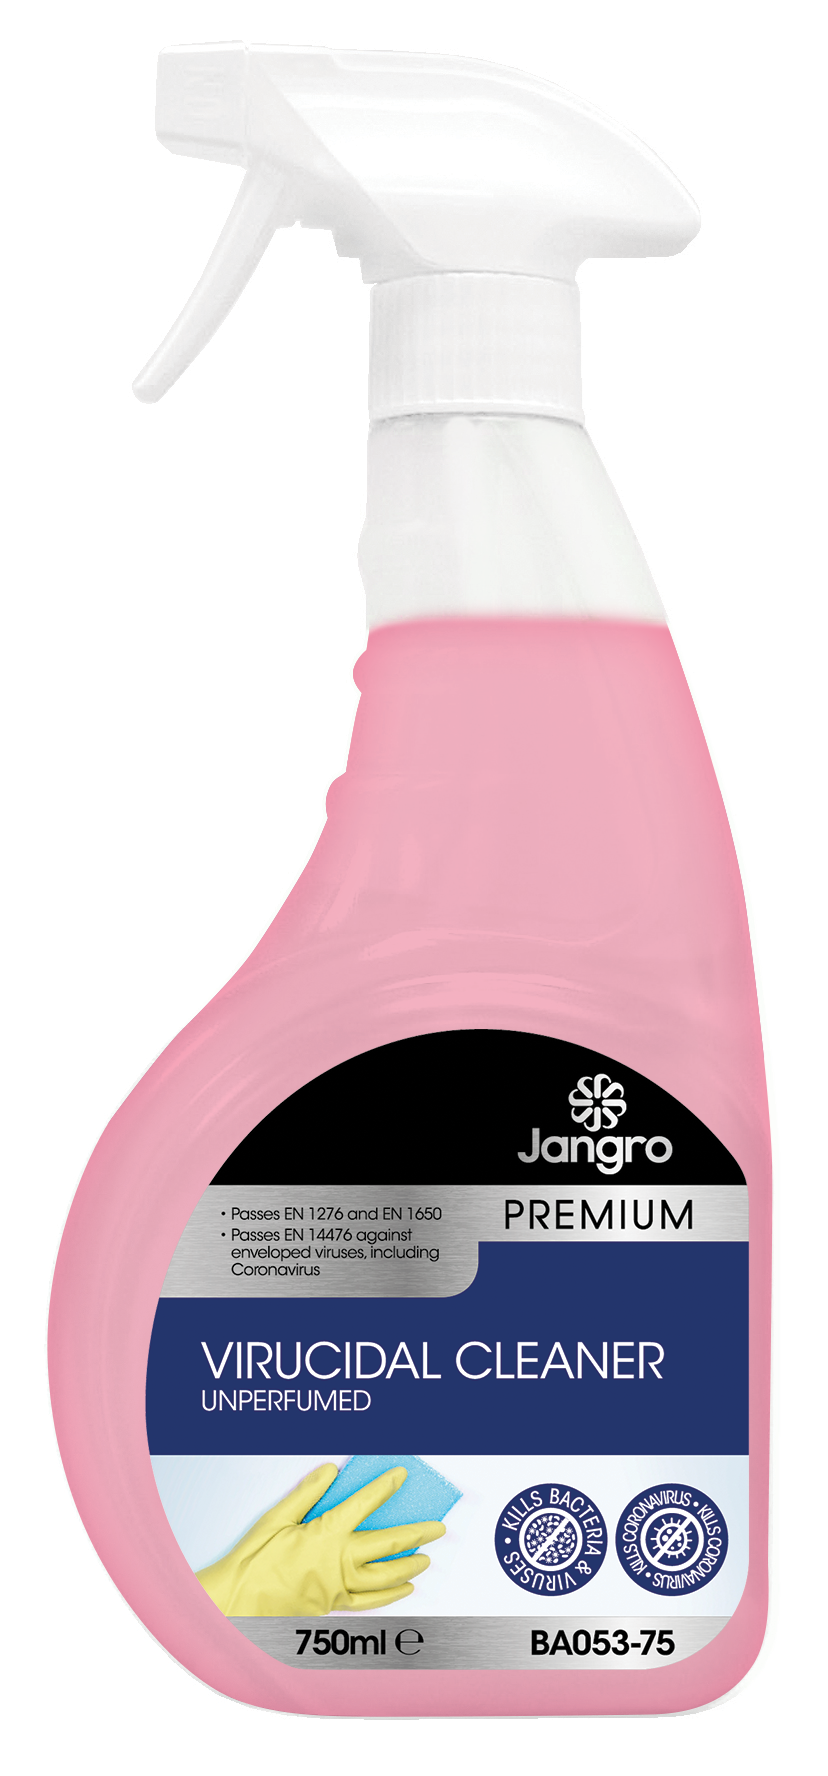 Jangro Premium Virucidal Cleaner - Unperfumed, 750ml